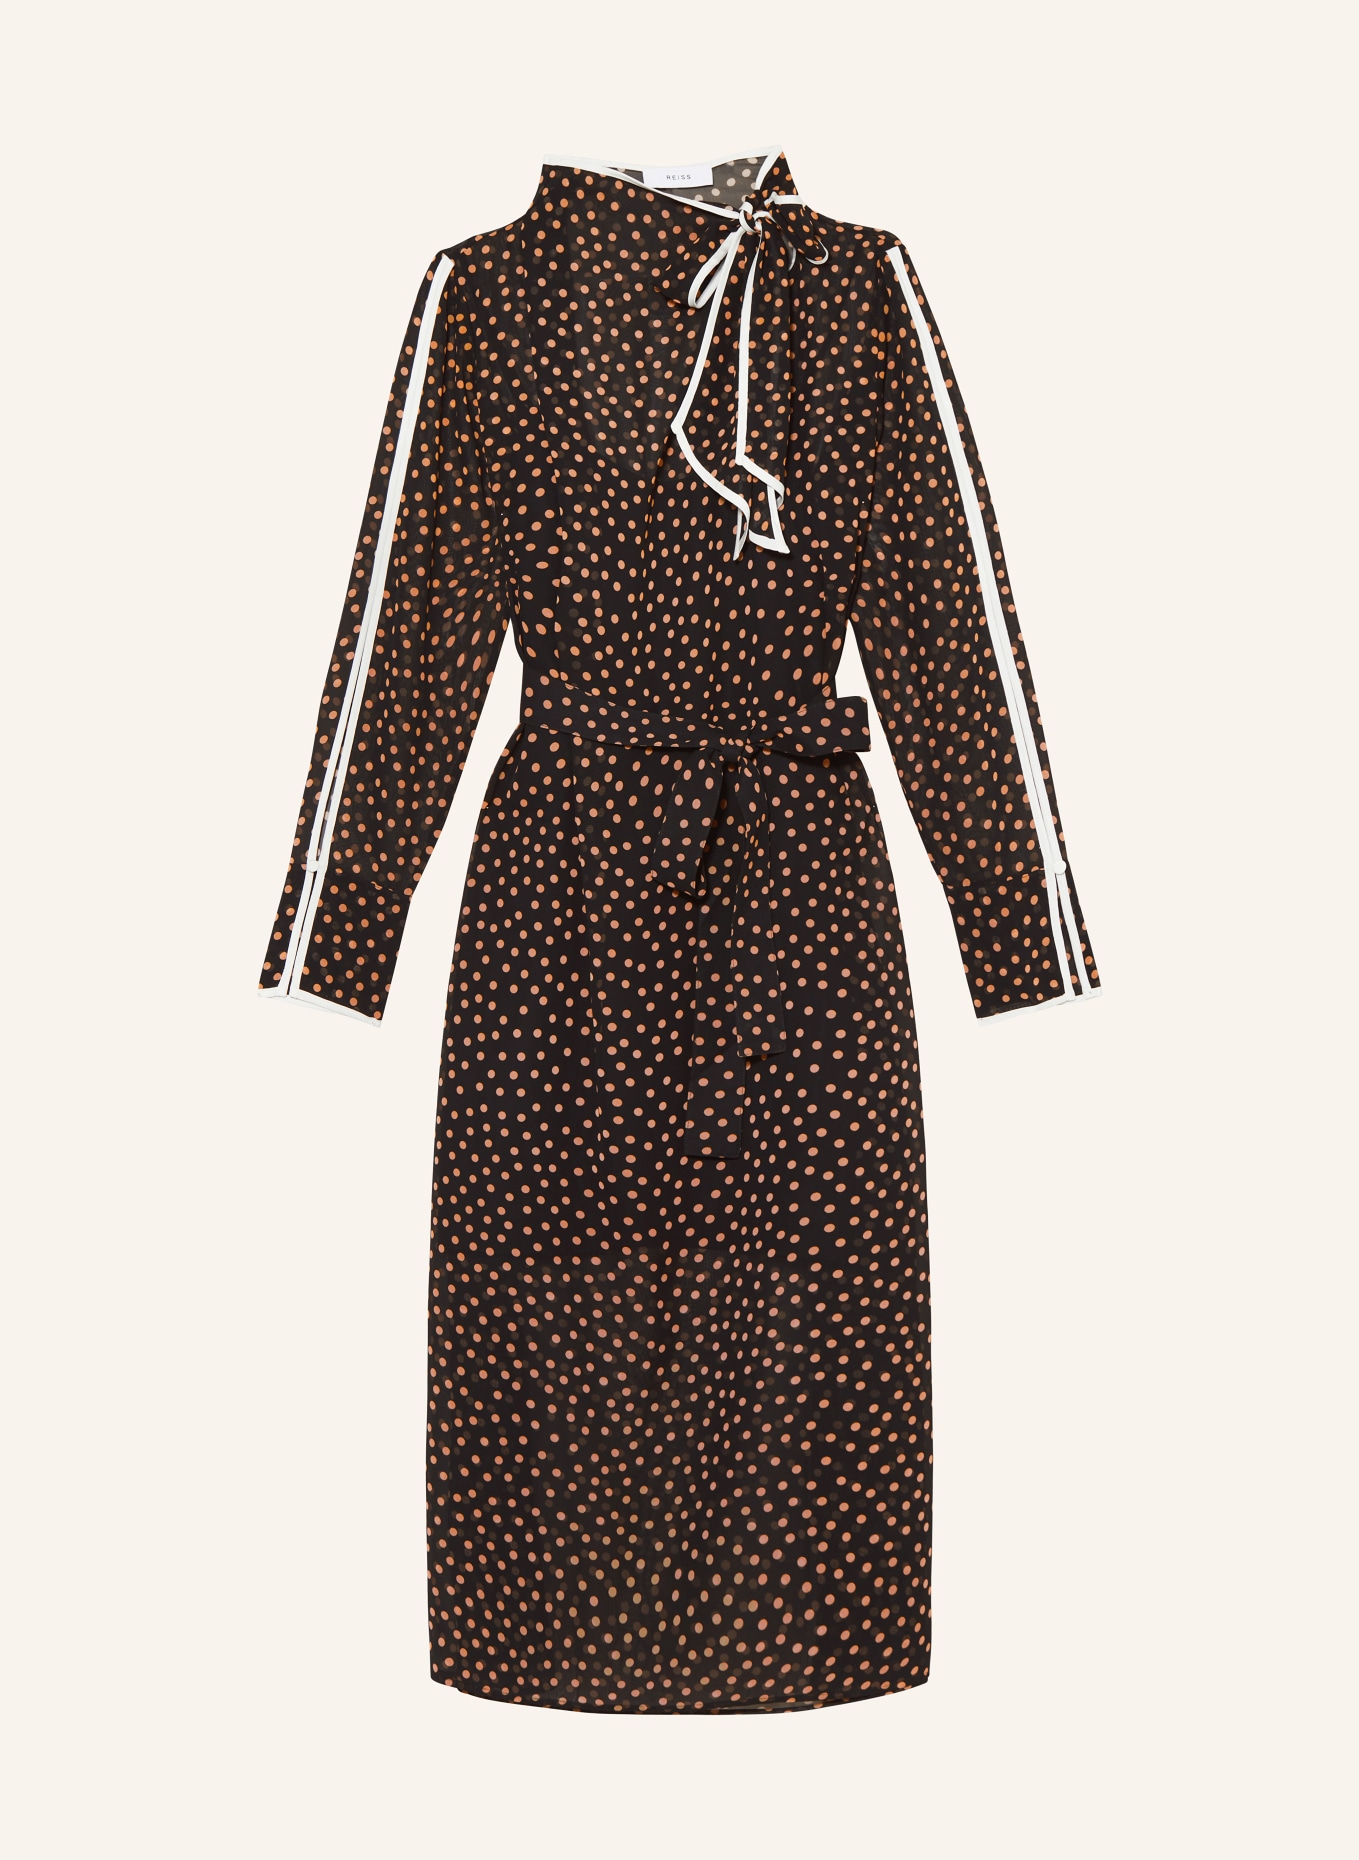 REISS Kleid ARIA mit Schluppe, Farbe: SCHWARZ/ HELLORANGE (Bild 1)